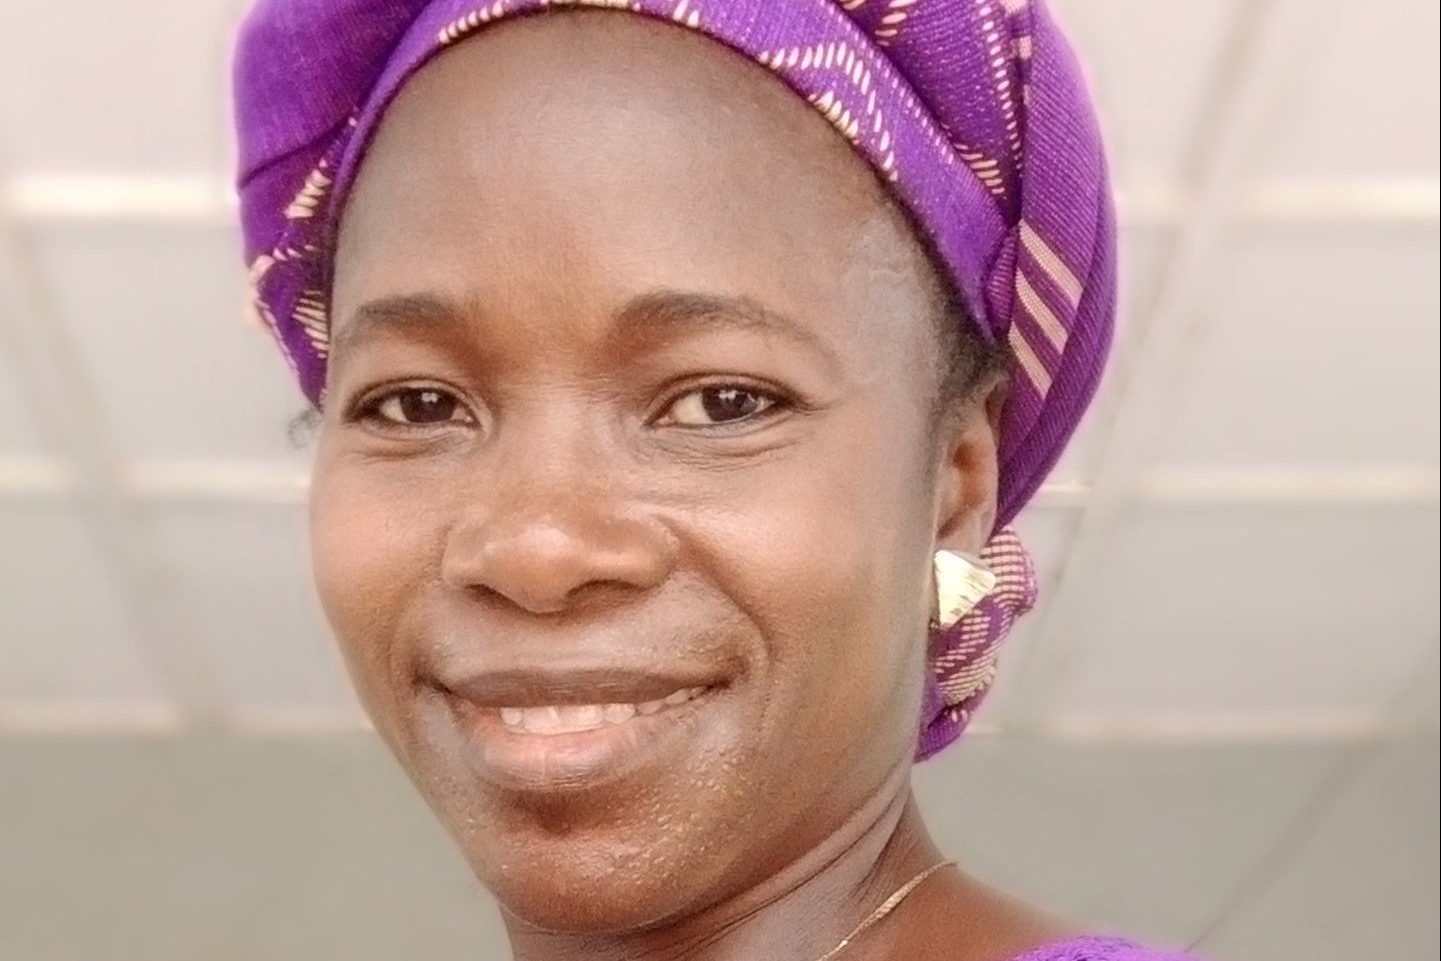 Margaret Attah, before the bomb blast in Owo, Nigeria